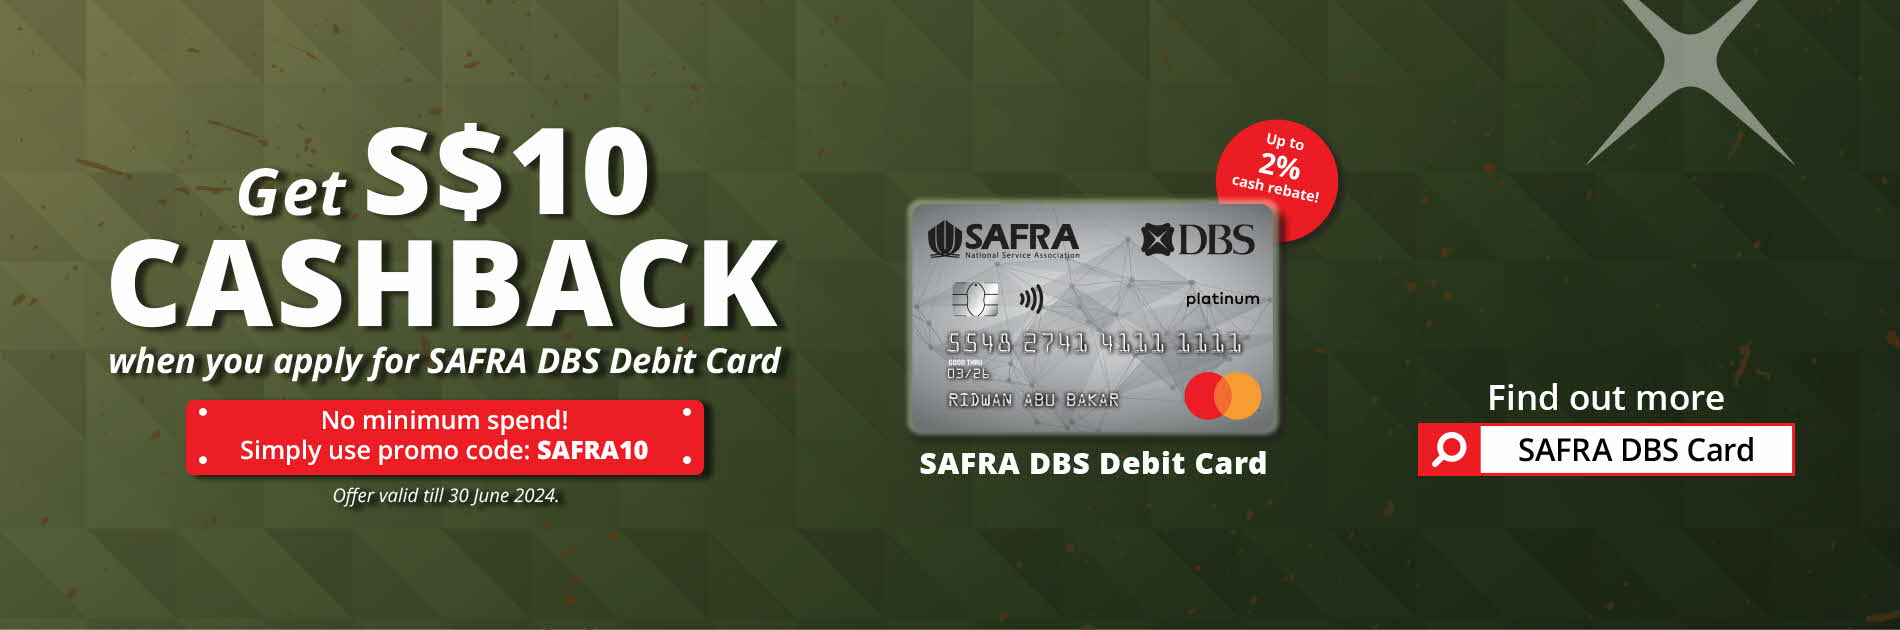 SAFRA DBS Debit Card $10 Cashback